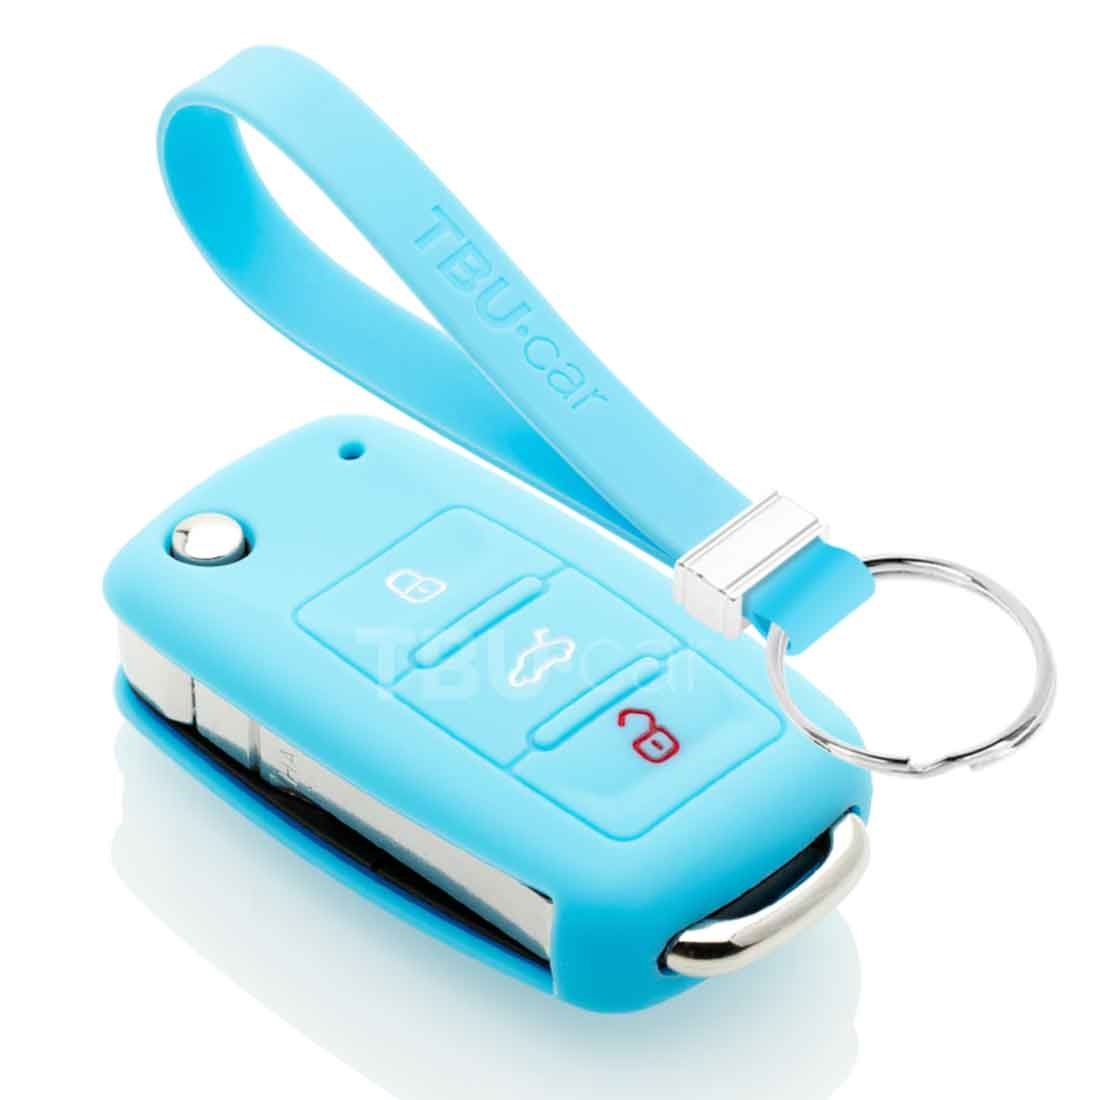 TBU car TBU car Housse de Protection clé compatible avec Seat - Coque Cover Housse étui en Silicone - Bleu clair